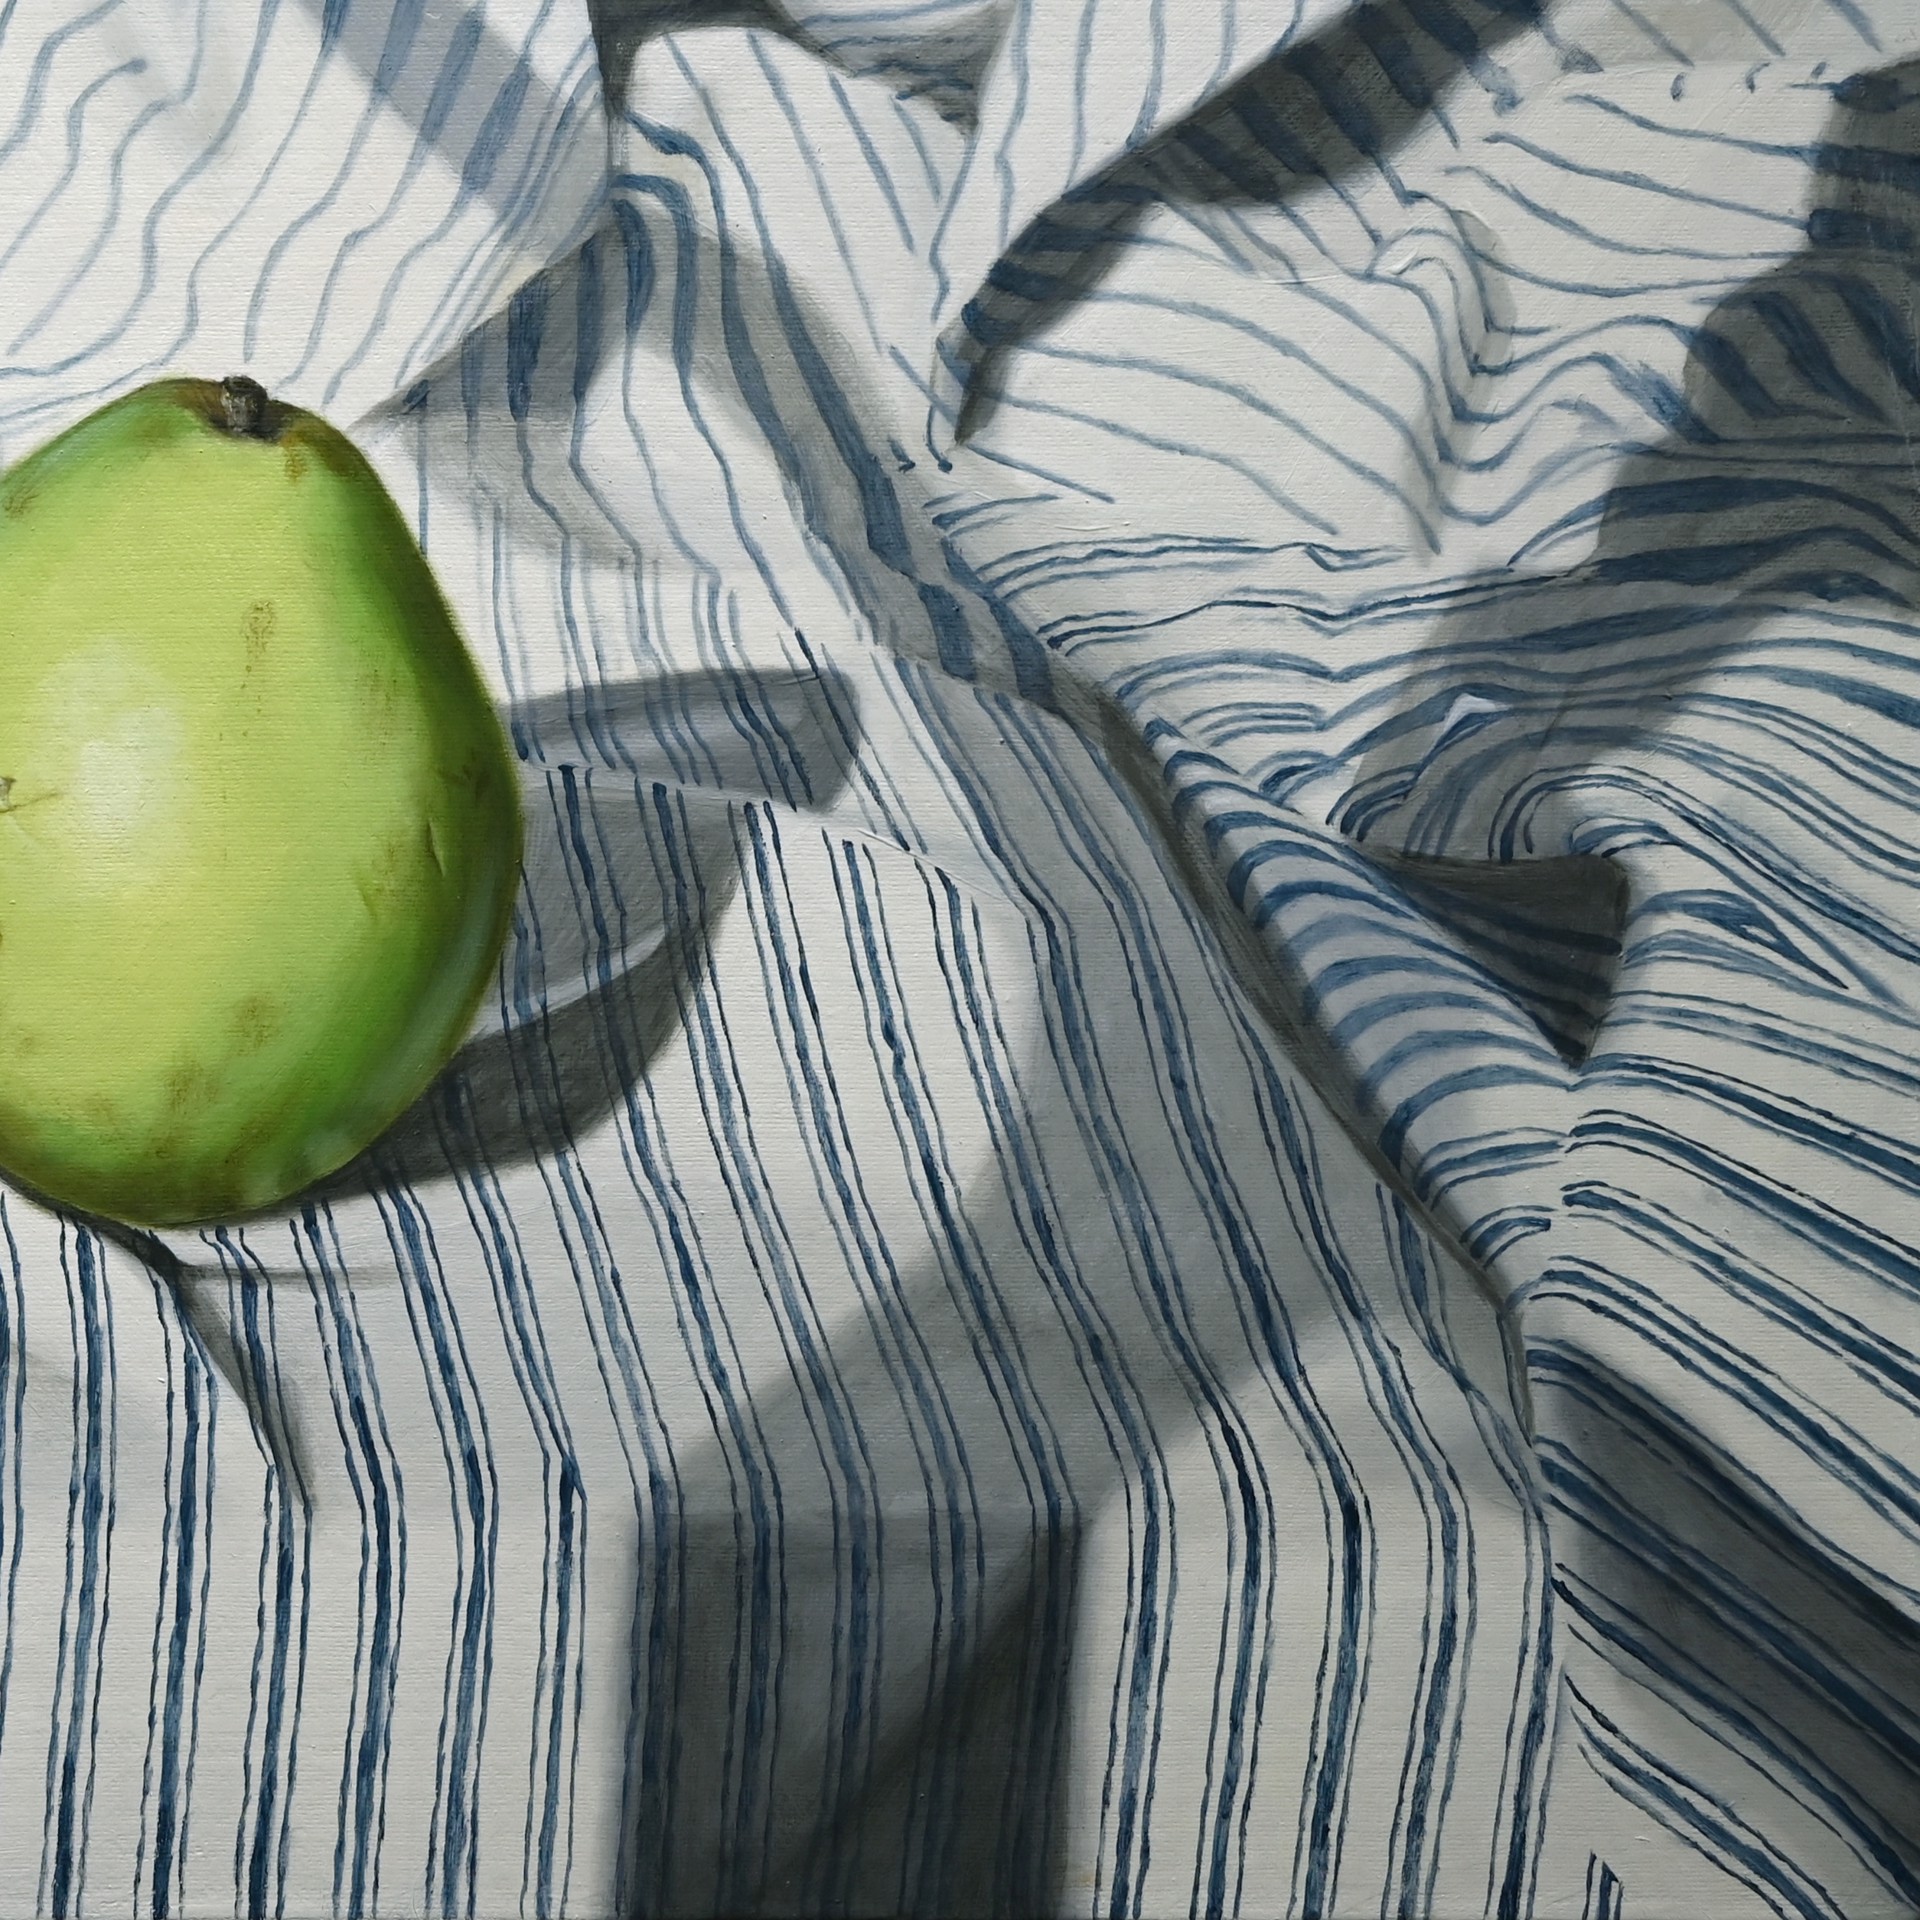 Sea of Stripes: Pears by Jordan Baker